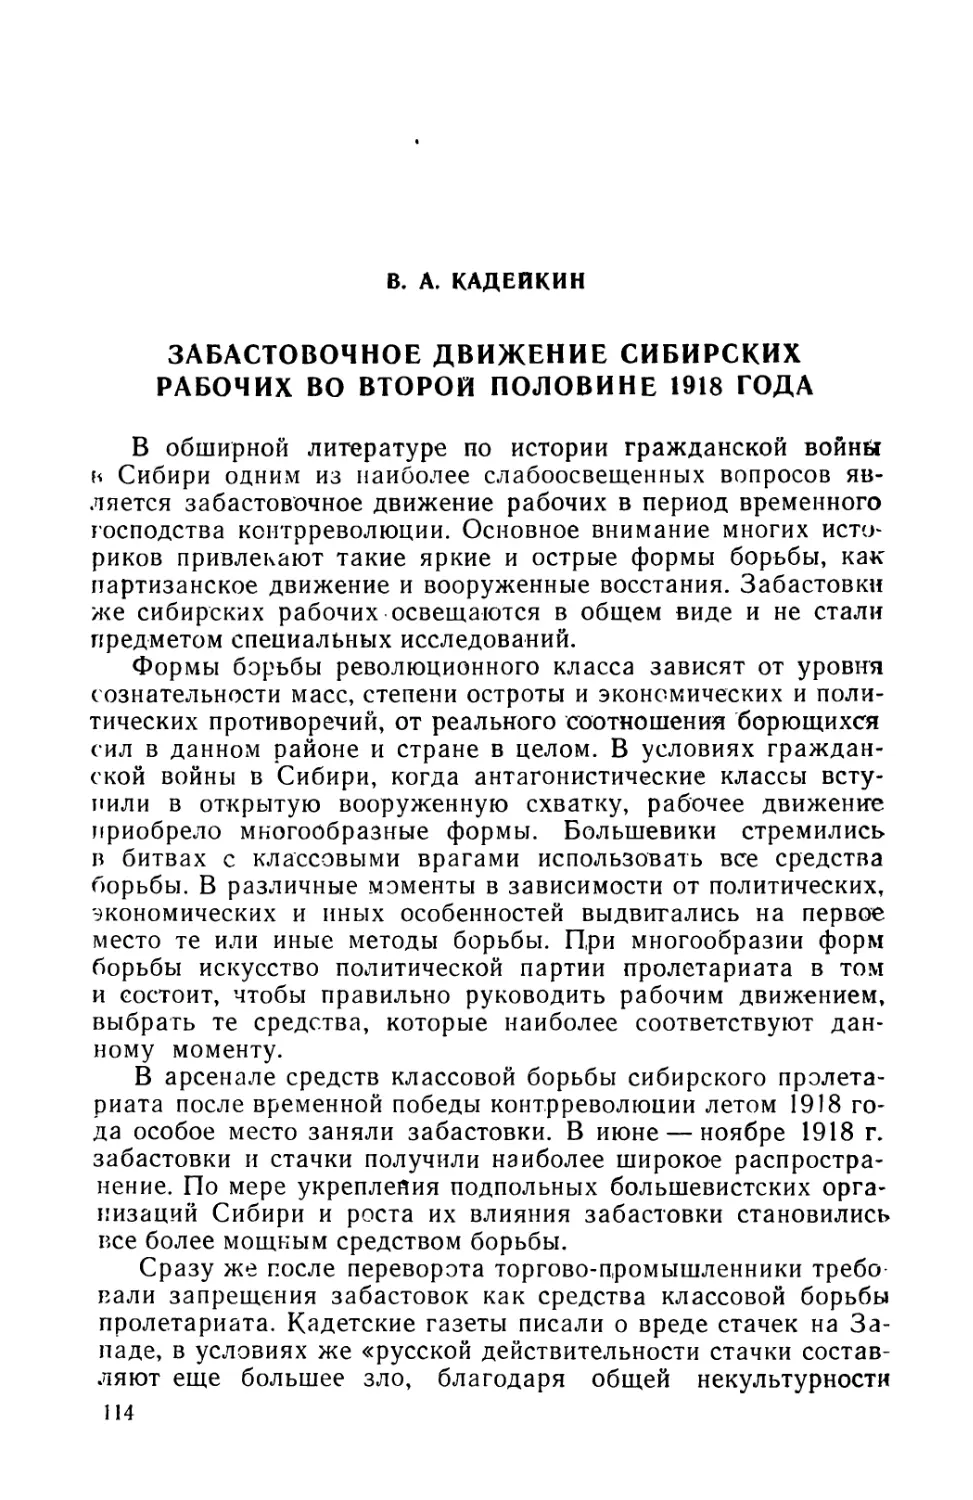 B. А.  Кадейкин.  Забастовочное  движение  сибирских  рабочих во  второй  половине  1918 года